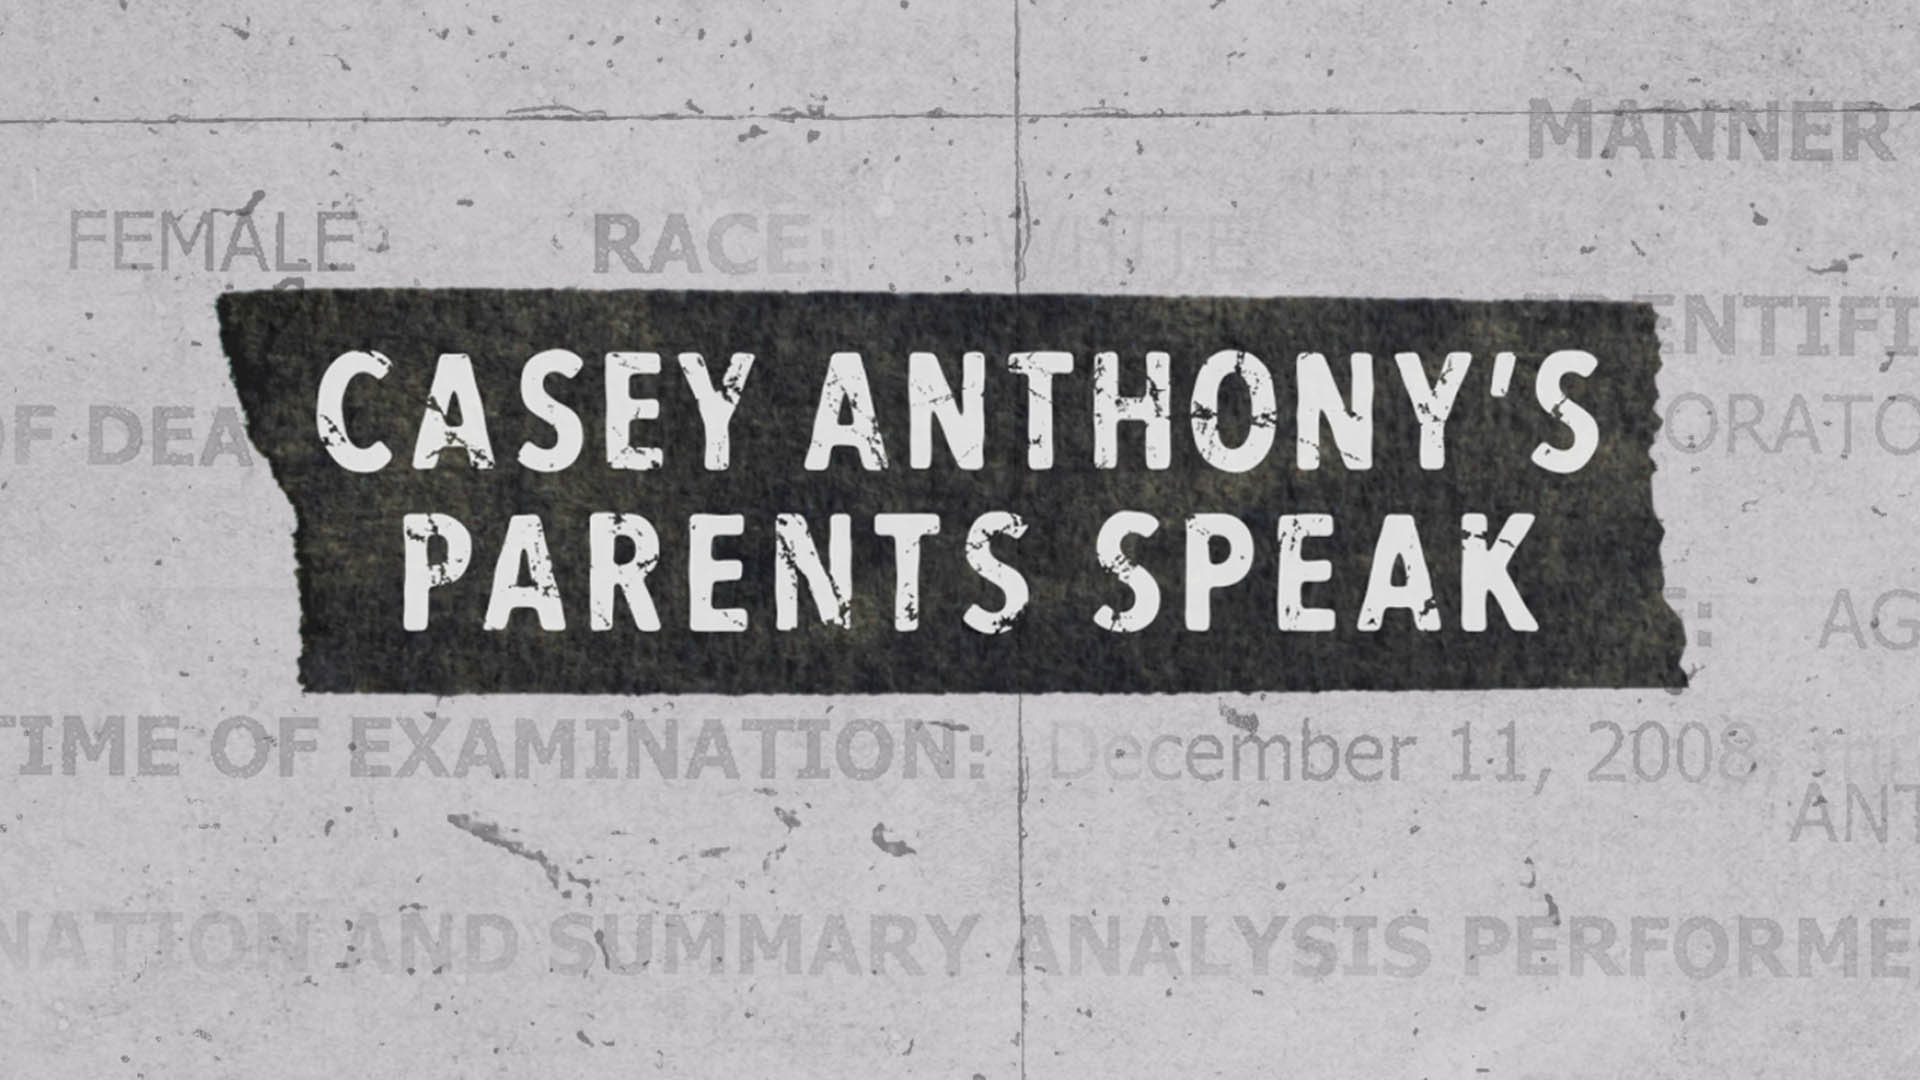 Casey Anthony's Parents Speak